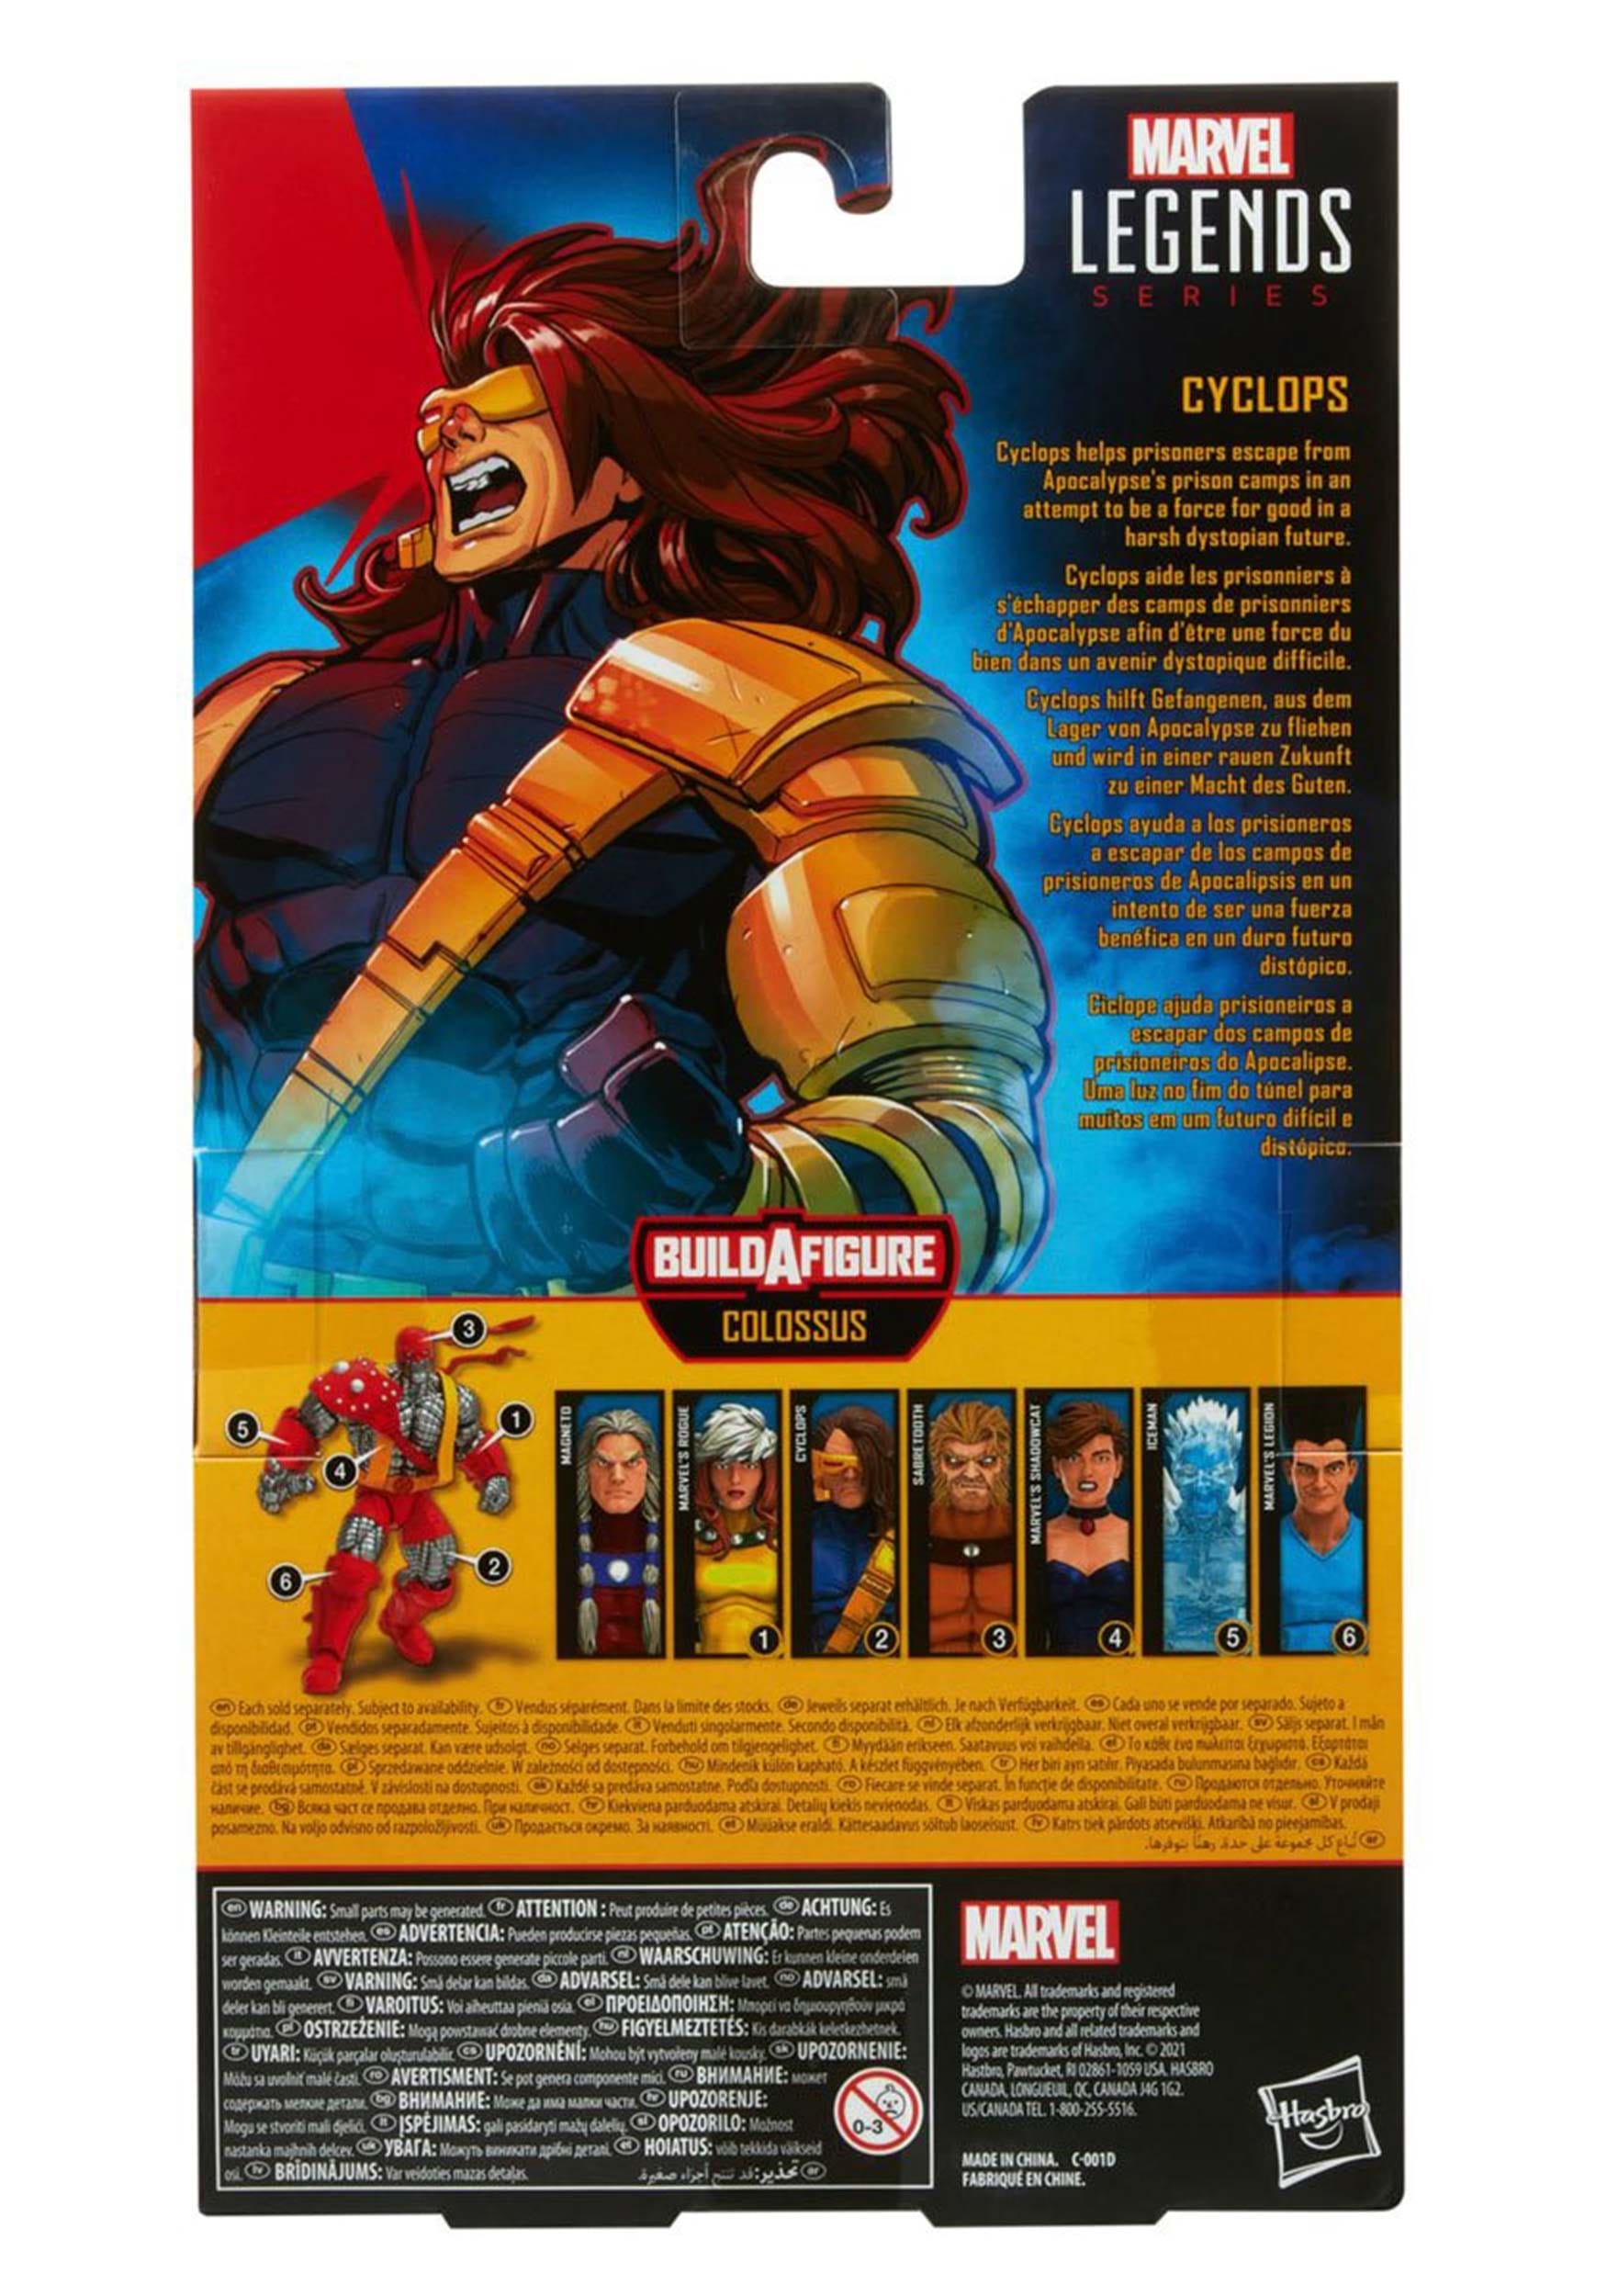 X-Men Age Of Apocalypse Marvel Legends Cyclops 6-Inch Action Figure